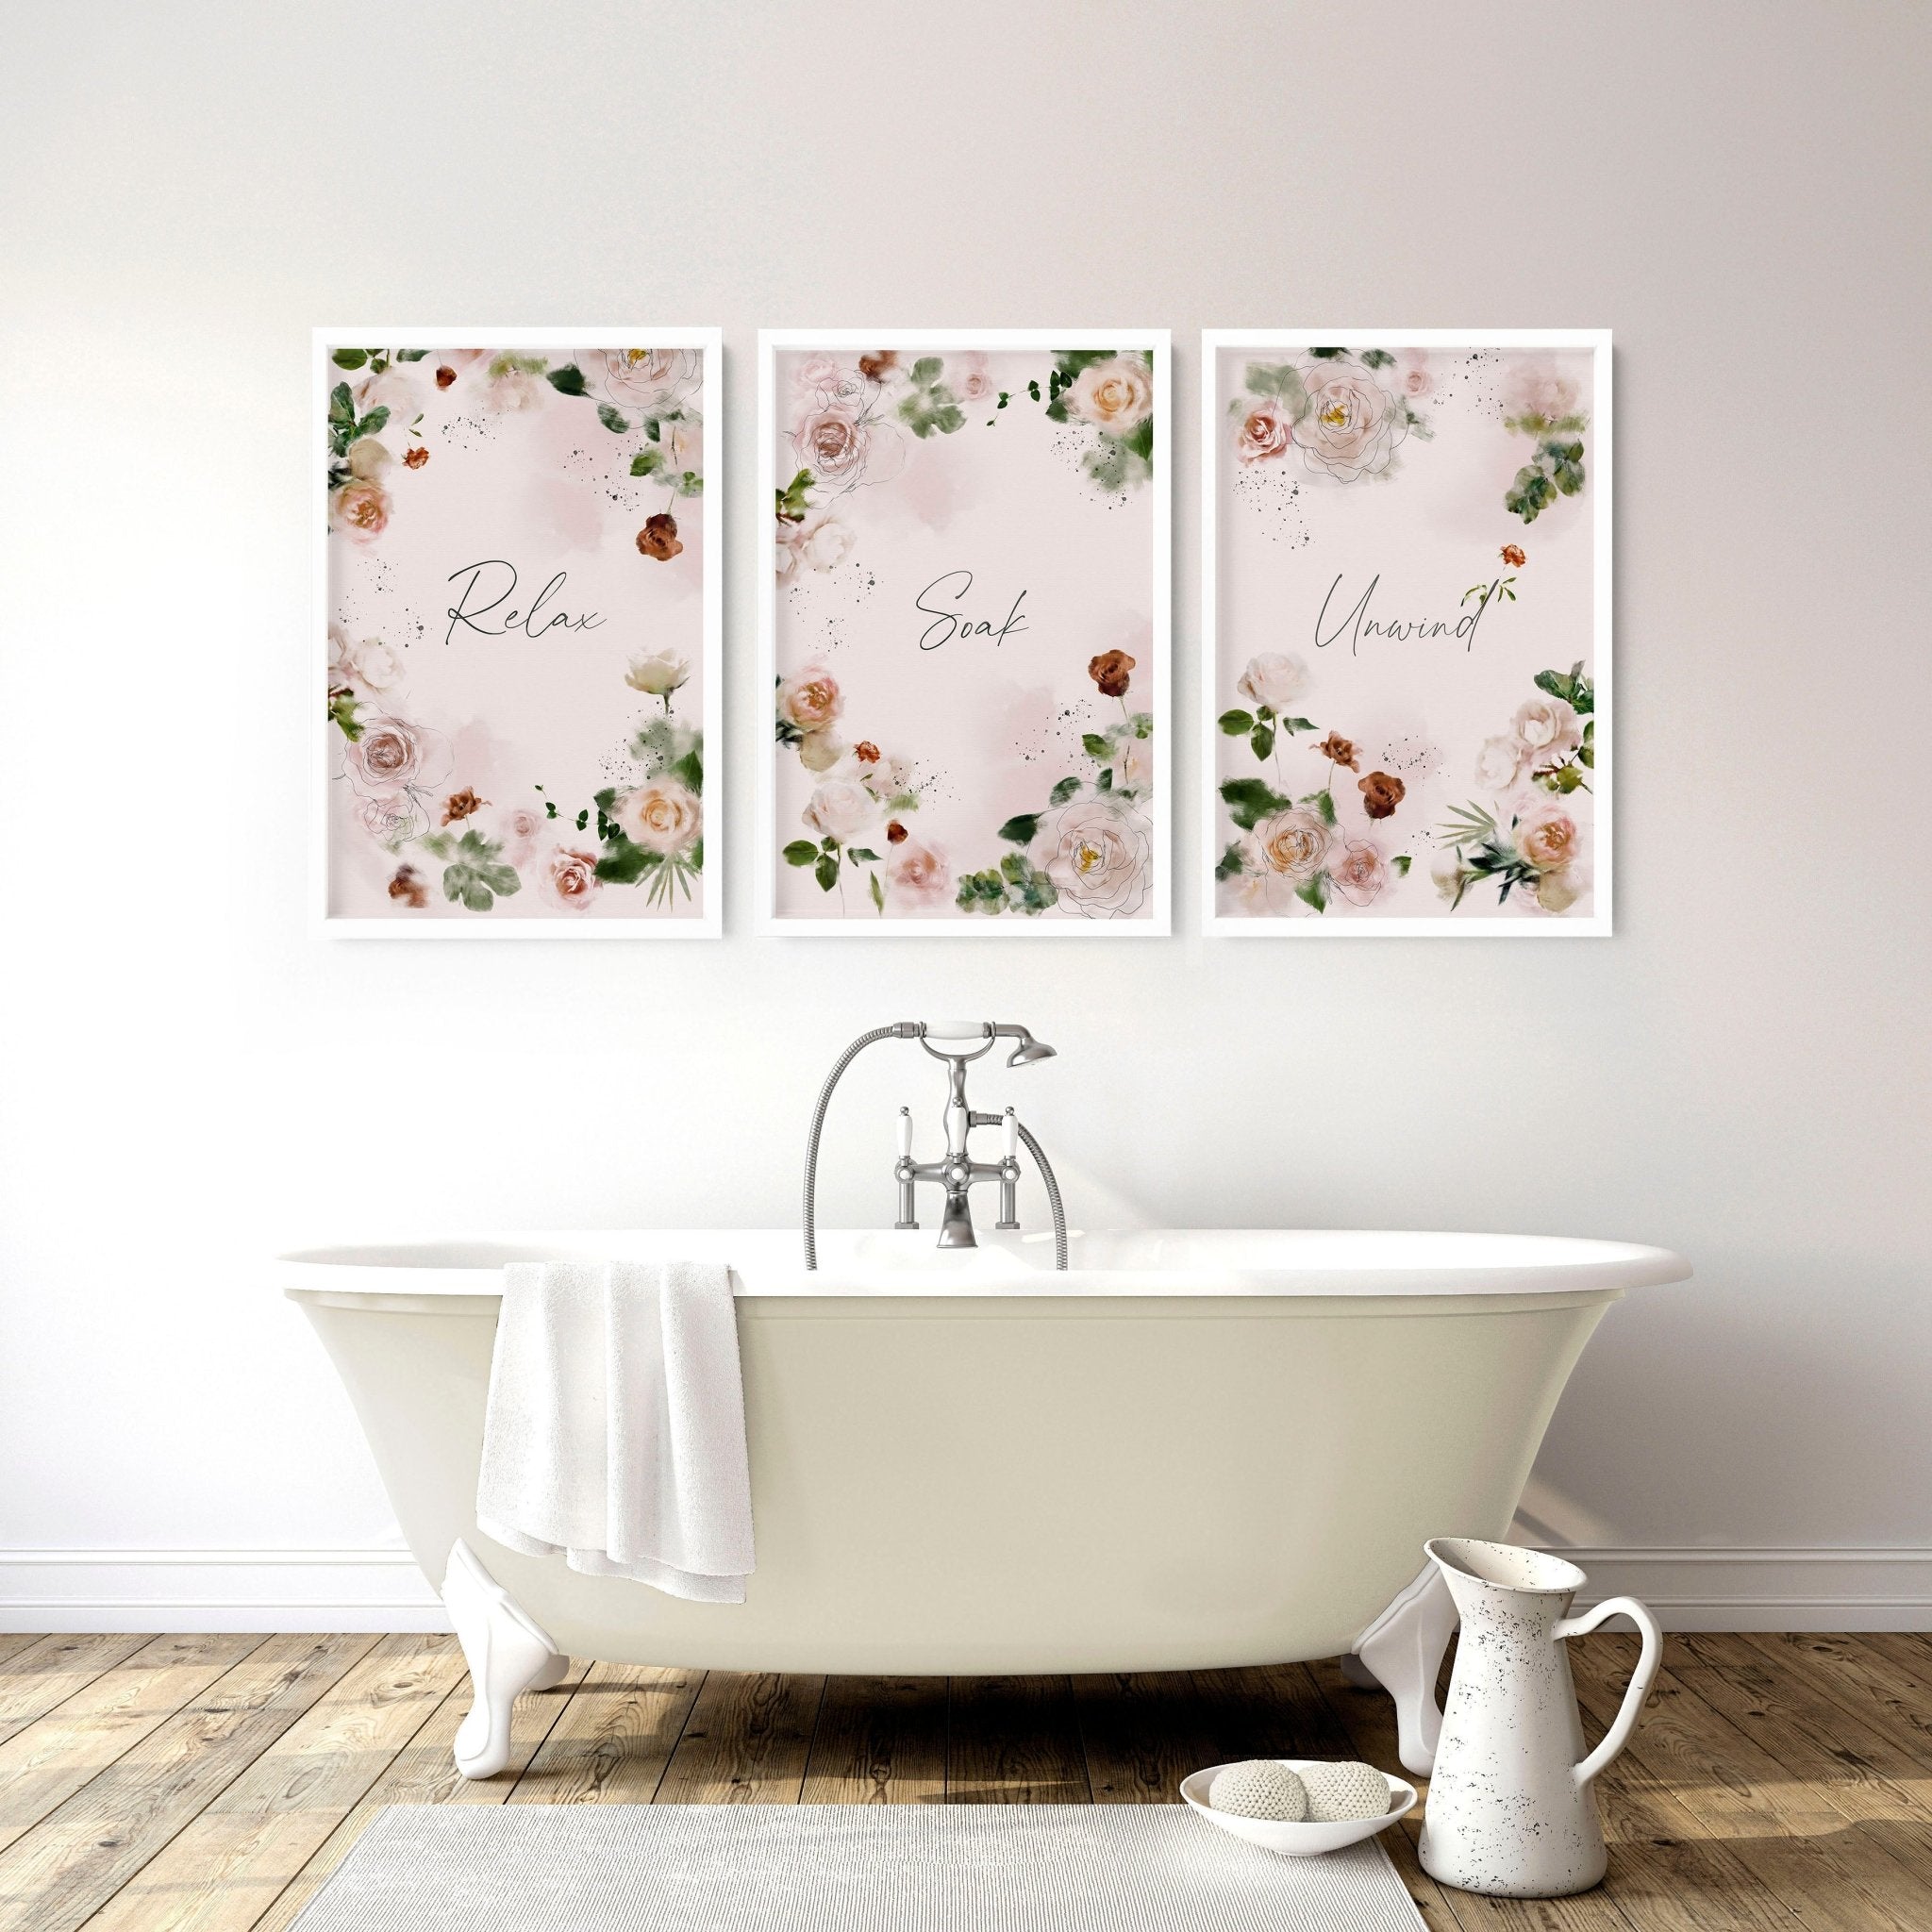 Juego de 3 impresiones de arte de pared para una decoración del hogar de baño de campo francés, impresiones de pared de granja para decoración de spa de baño de moda Shabby Chic